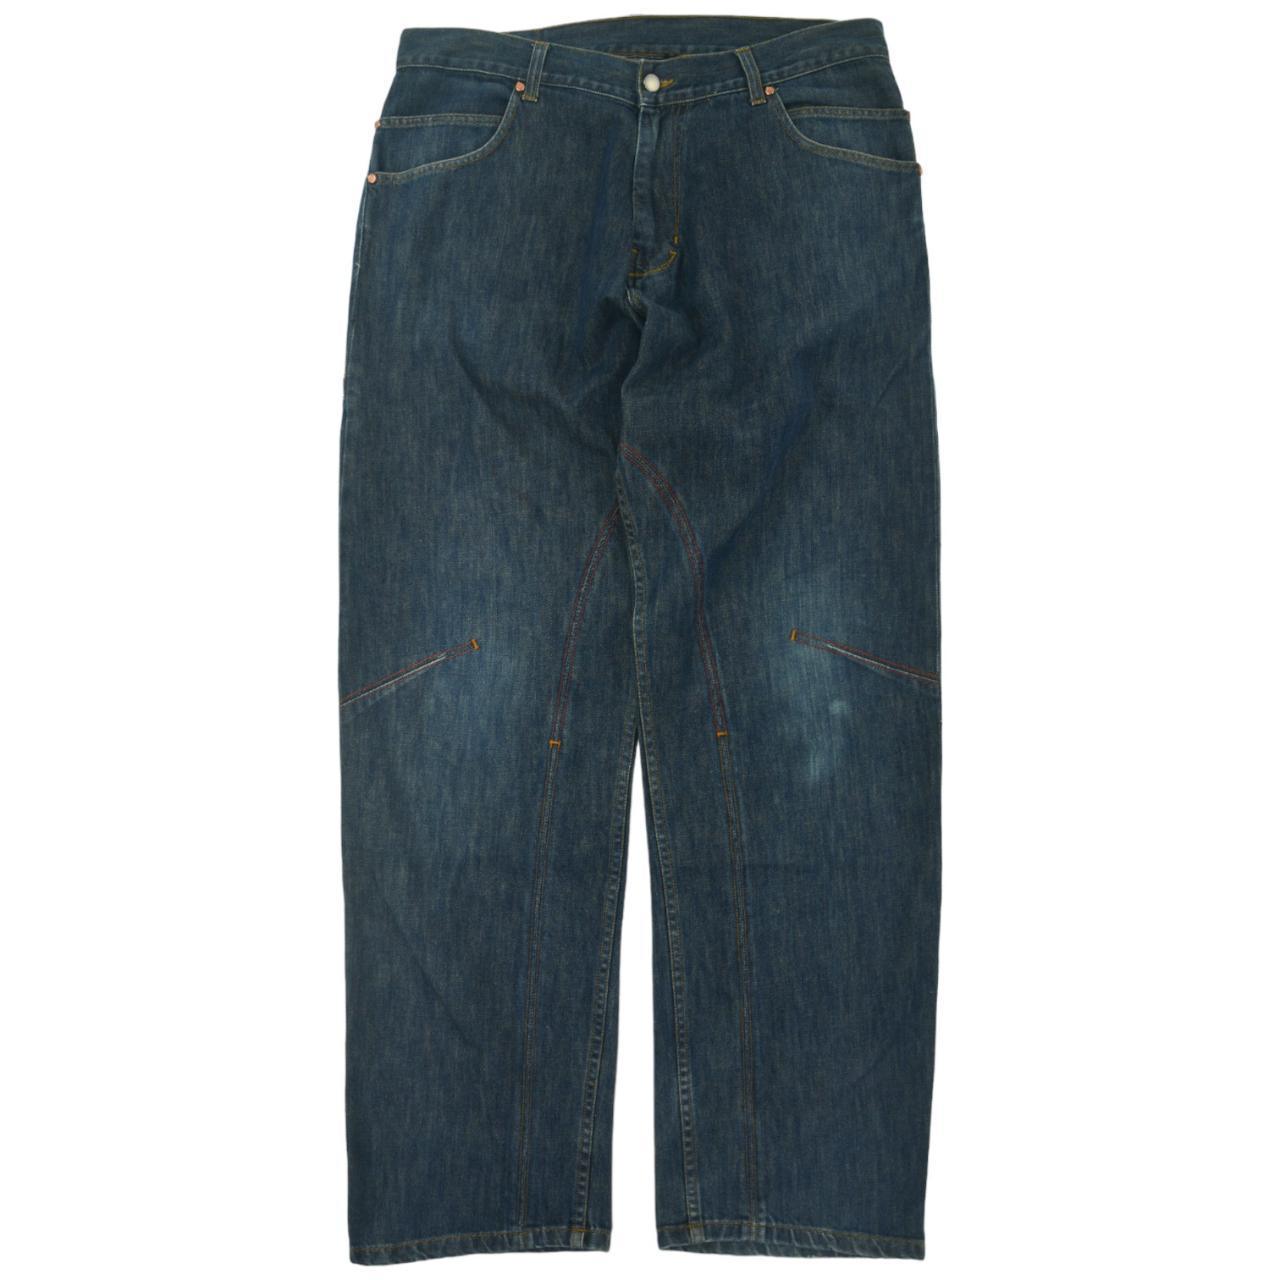 Vintage Salomon Denim Jeans Size L - Known Source